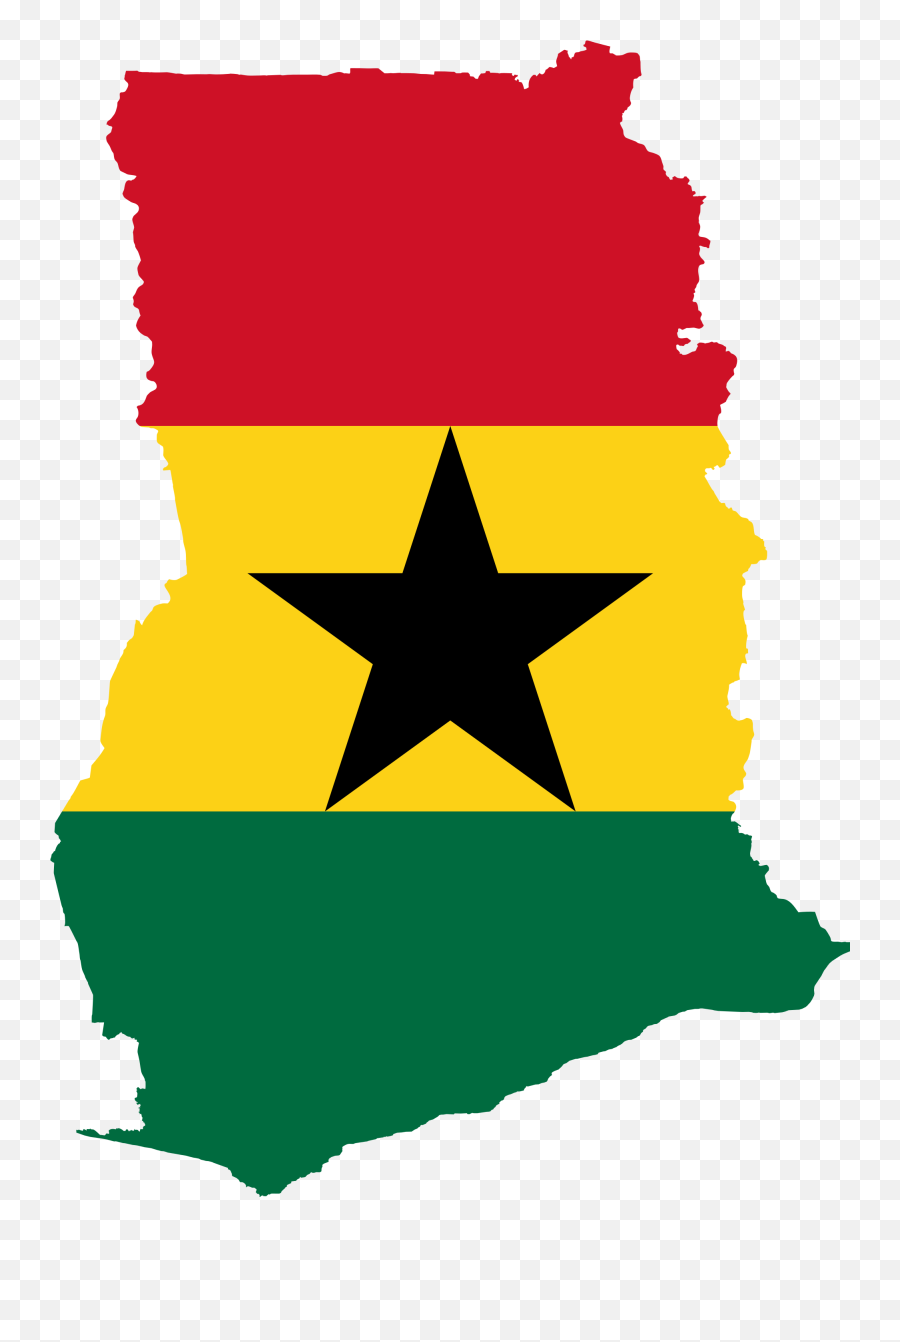 Ghana Flag Png 7 Image - Ghana Flag Map,Jamaica Flag Png